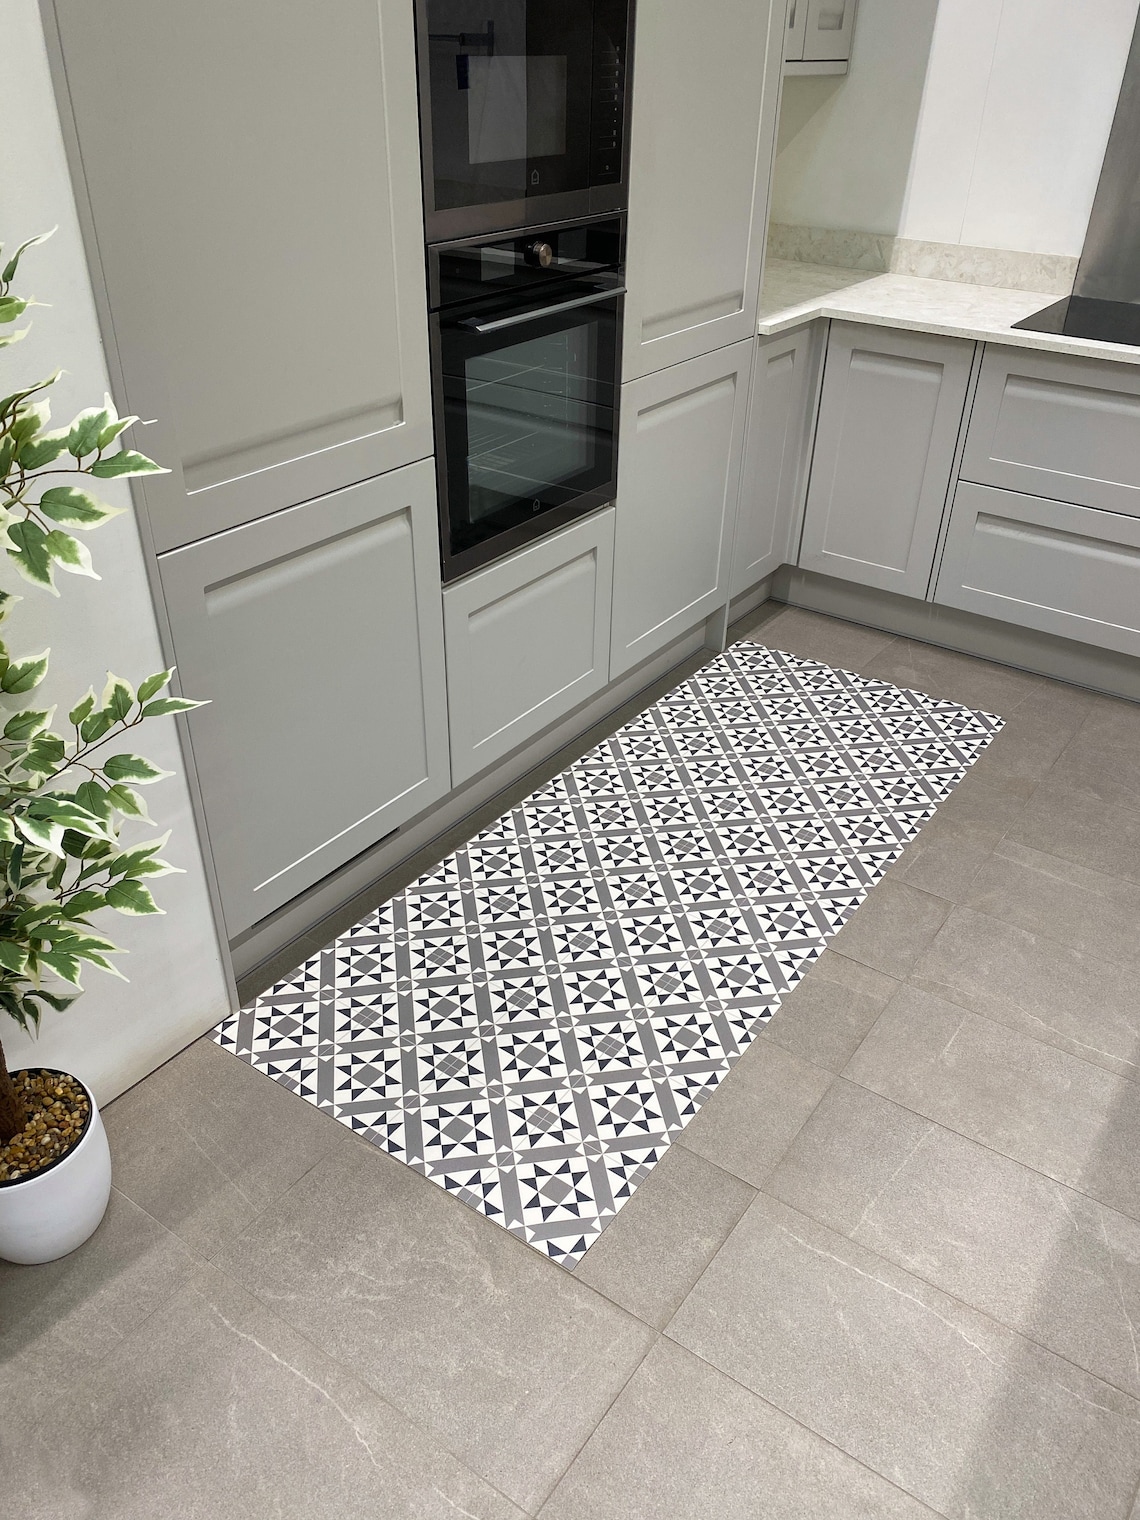 Vinyl Floor Runner Rug in Grey Tile Design Kitchen Decor Mat - Etsy